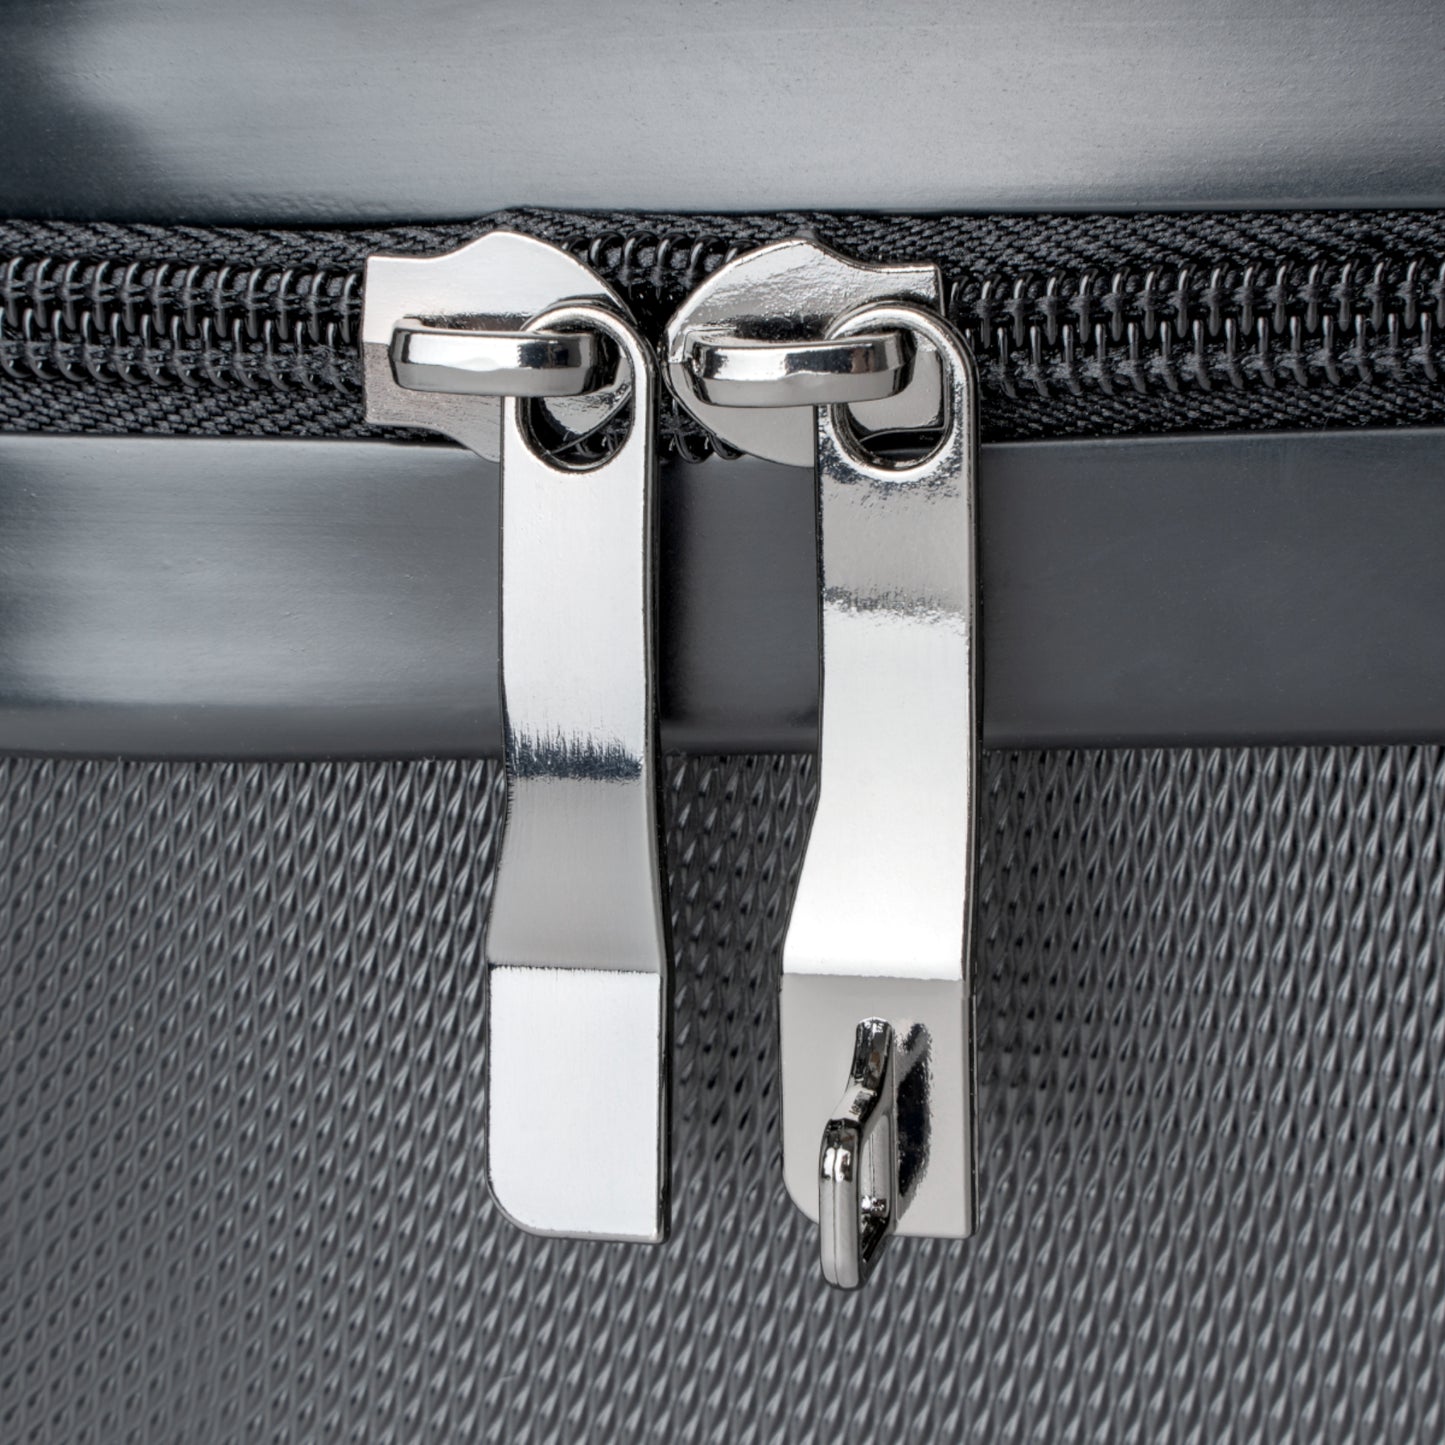 Daisy Suitcase / Custom Luggage / Daisy Luggage / Floral Suitcase